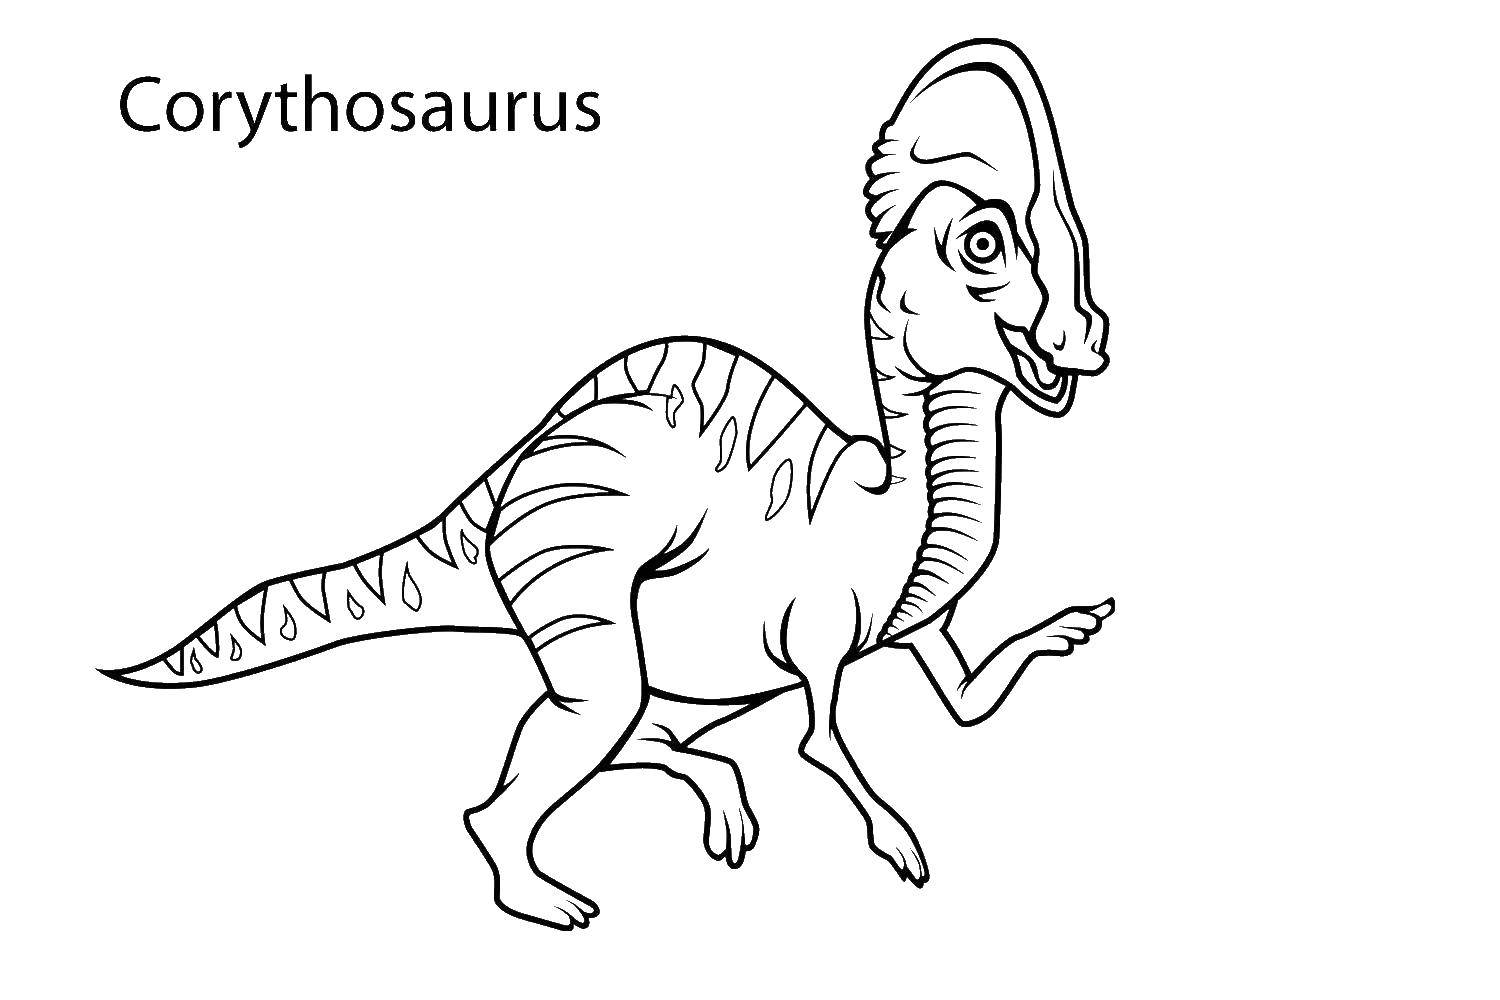 Coloring The corythosaurus. Category dinosaur. Tags:  Dinosaurs.